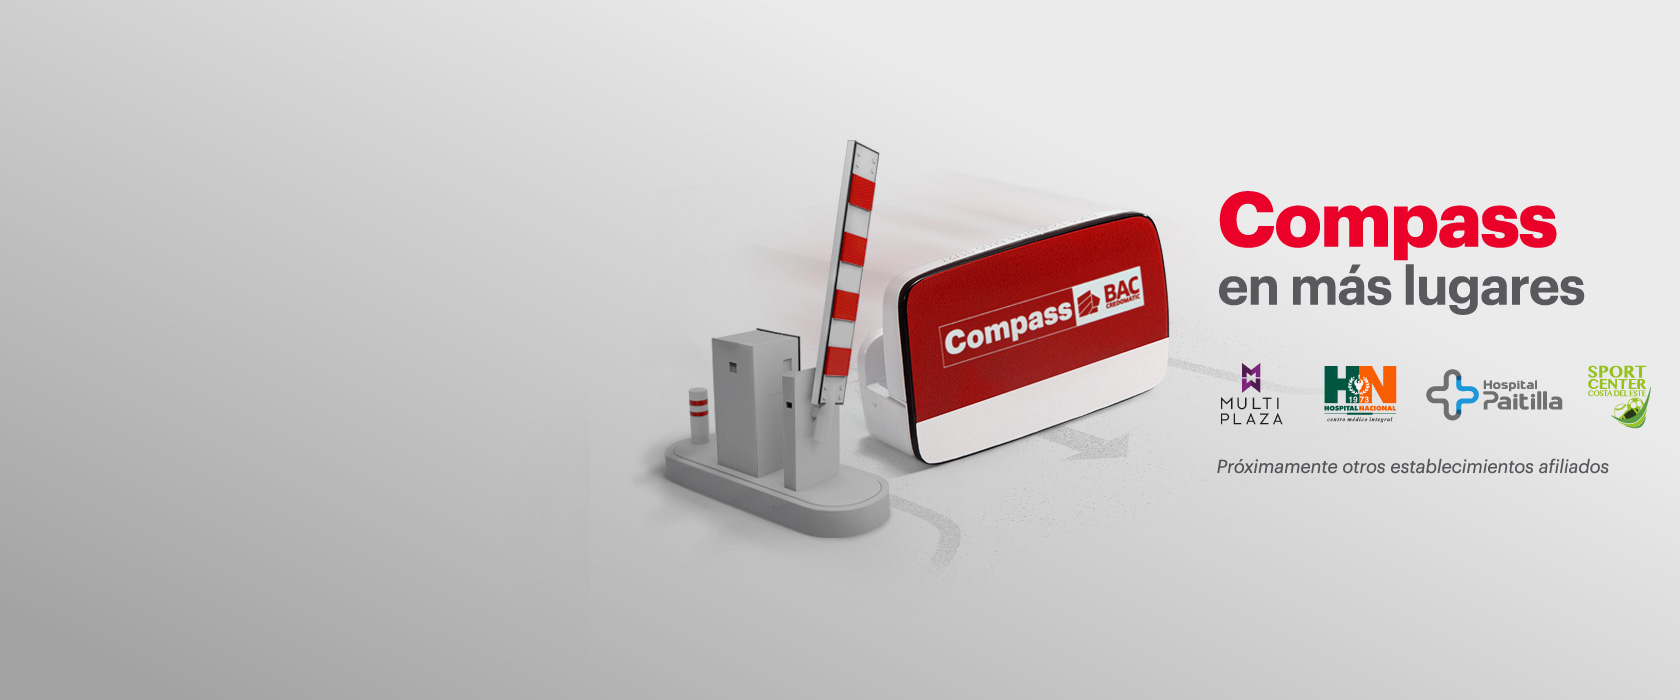 Imagen de dispositivo Compass, una aguja de parqueo, y logotipos de negocios